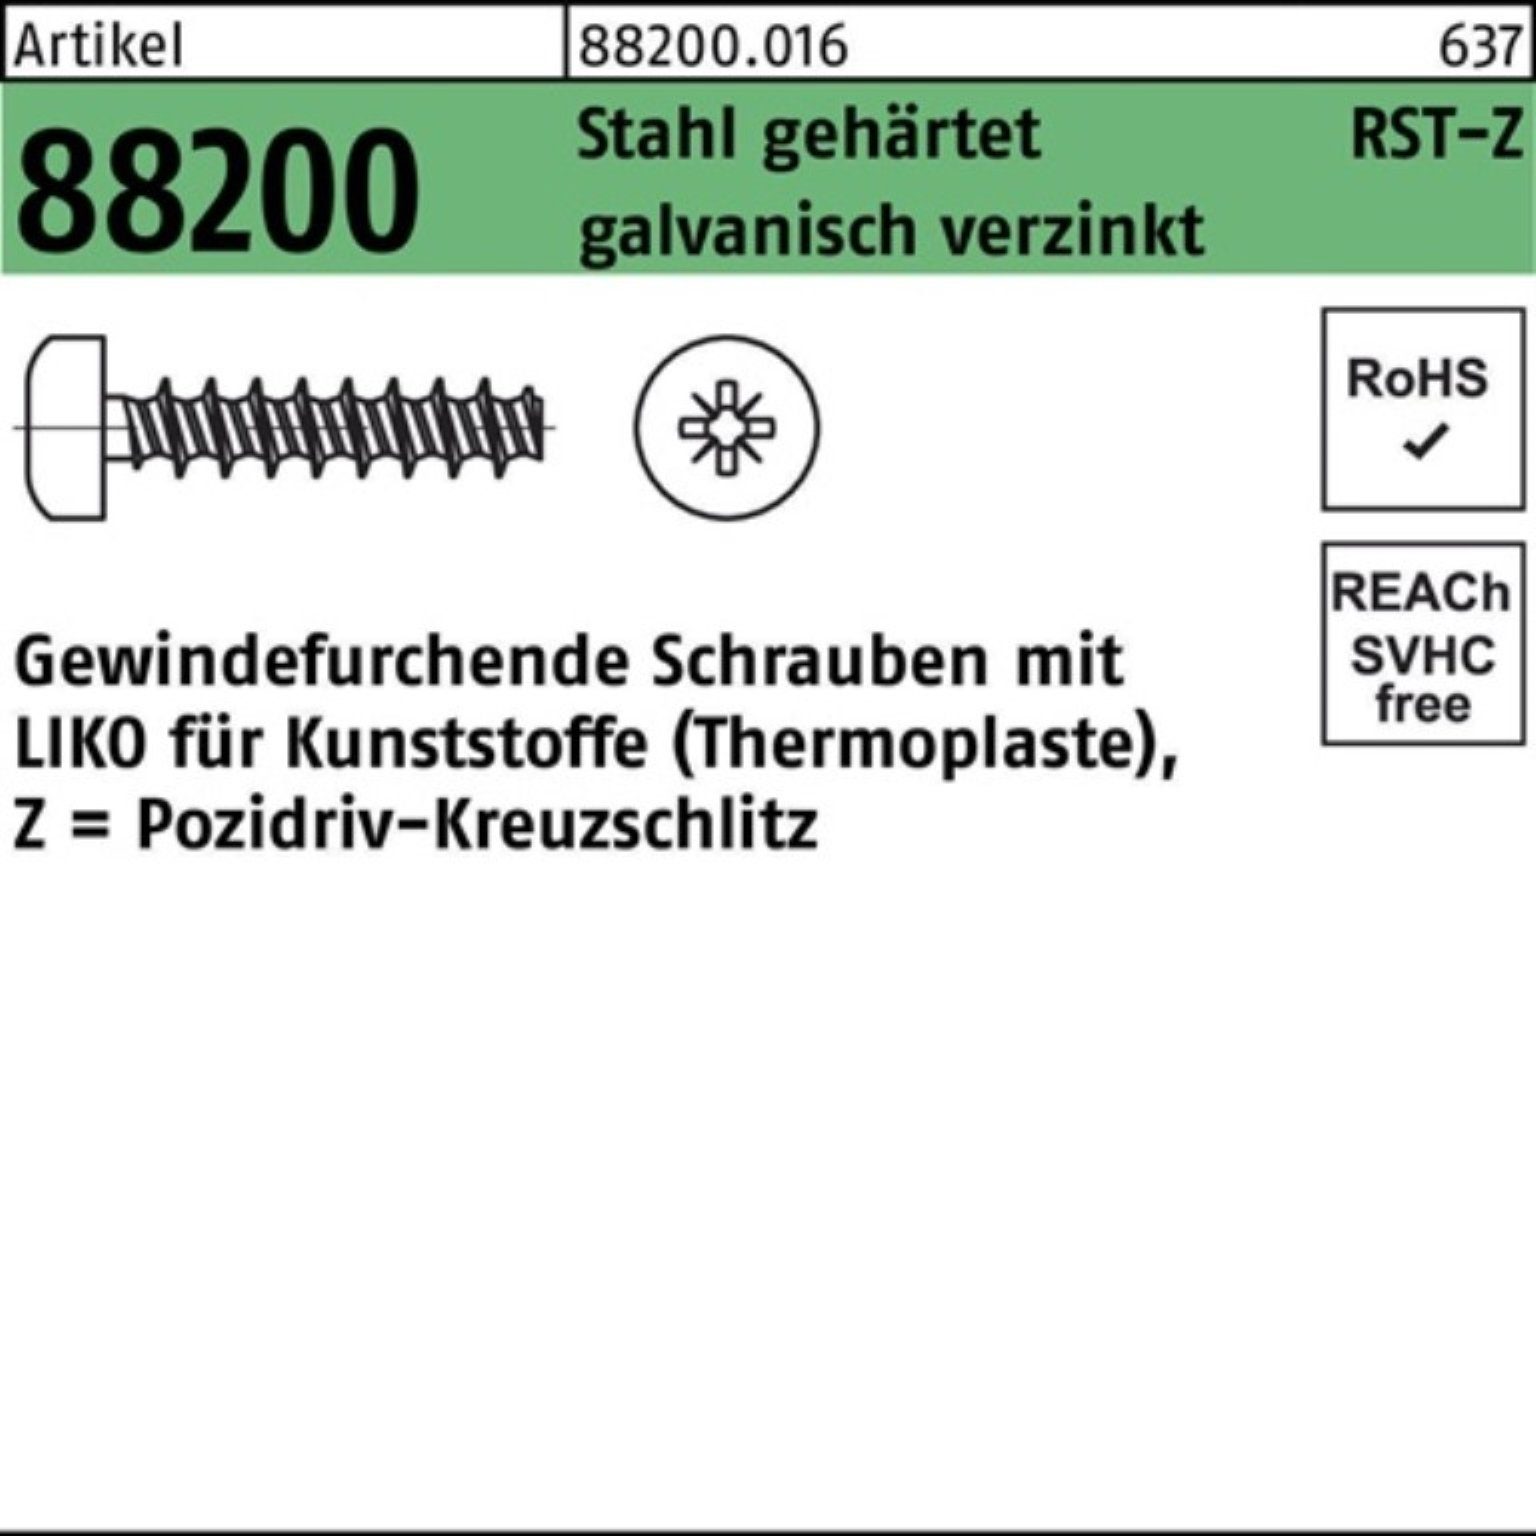 3x6-Z Pack PZ Liko Gewindefurchendeschraube Reyher Stahl 1000er 88200 gehä Gewindeschraube R